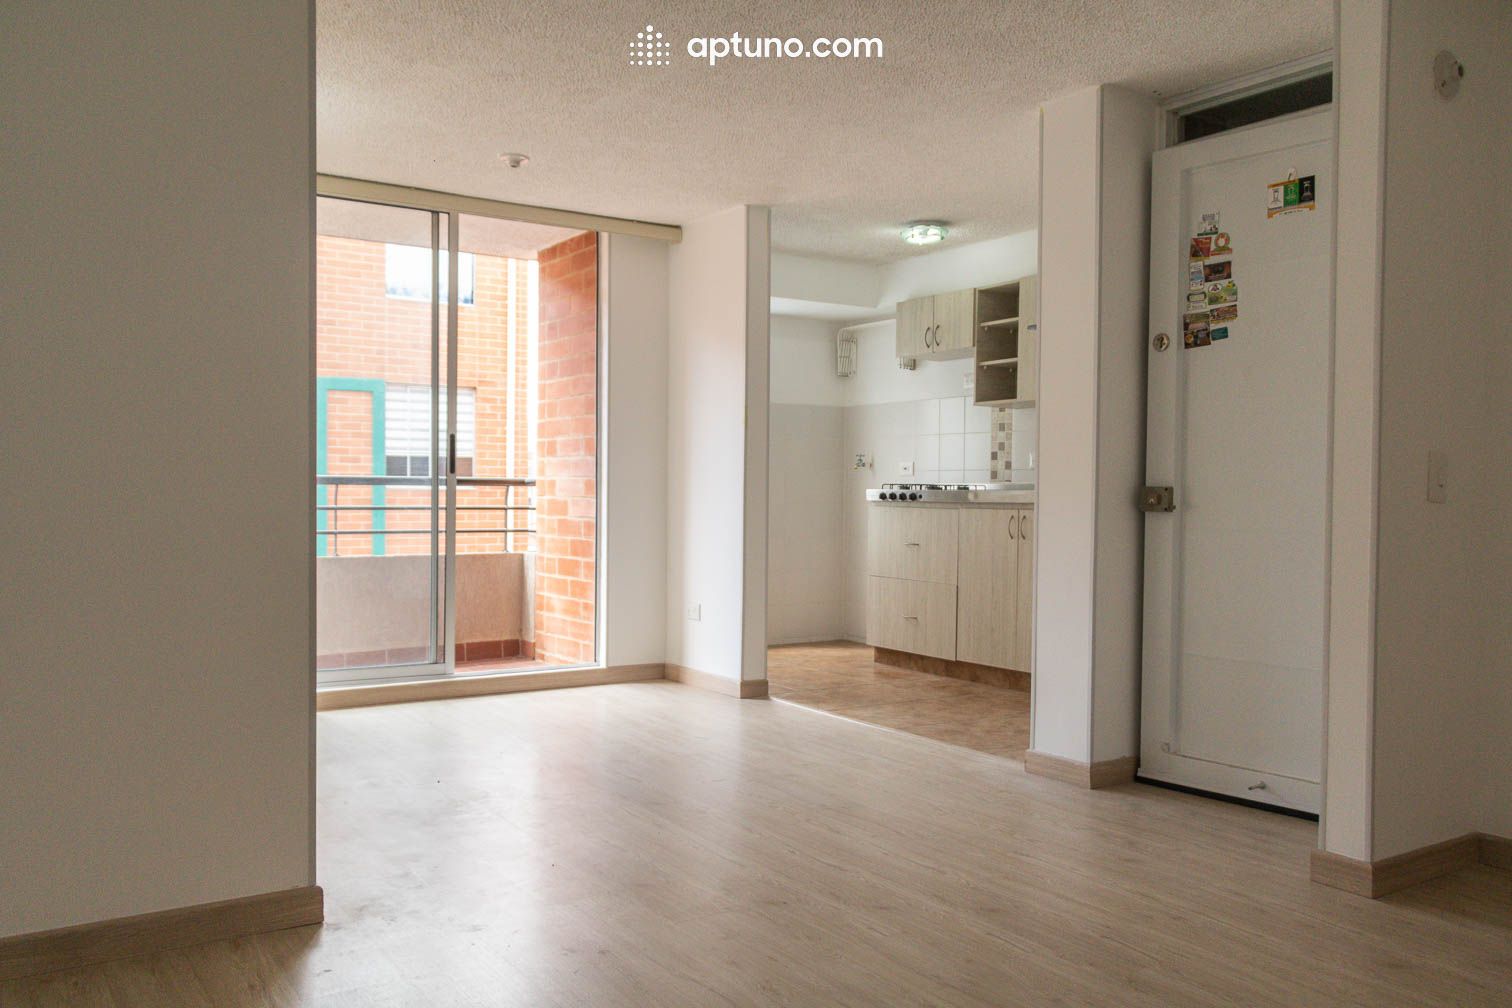 Apartamento en arriendo Tocancipá 61 m² - $ 910.000,00